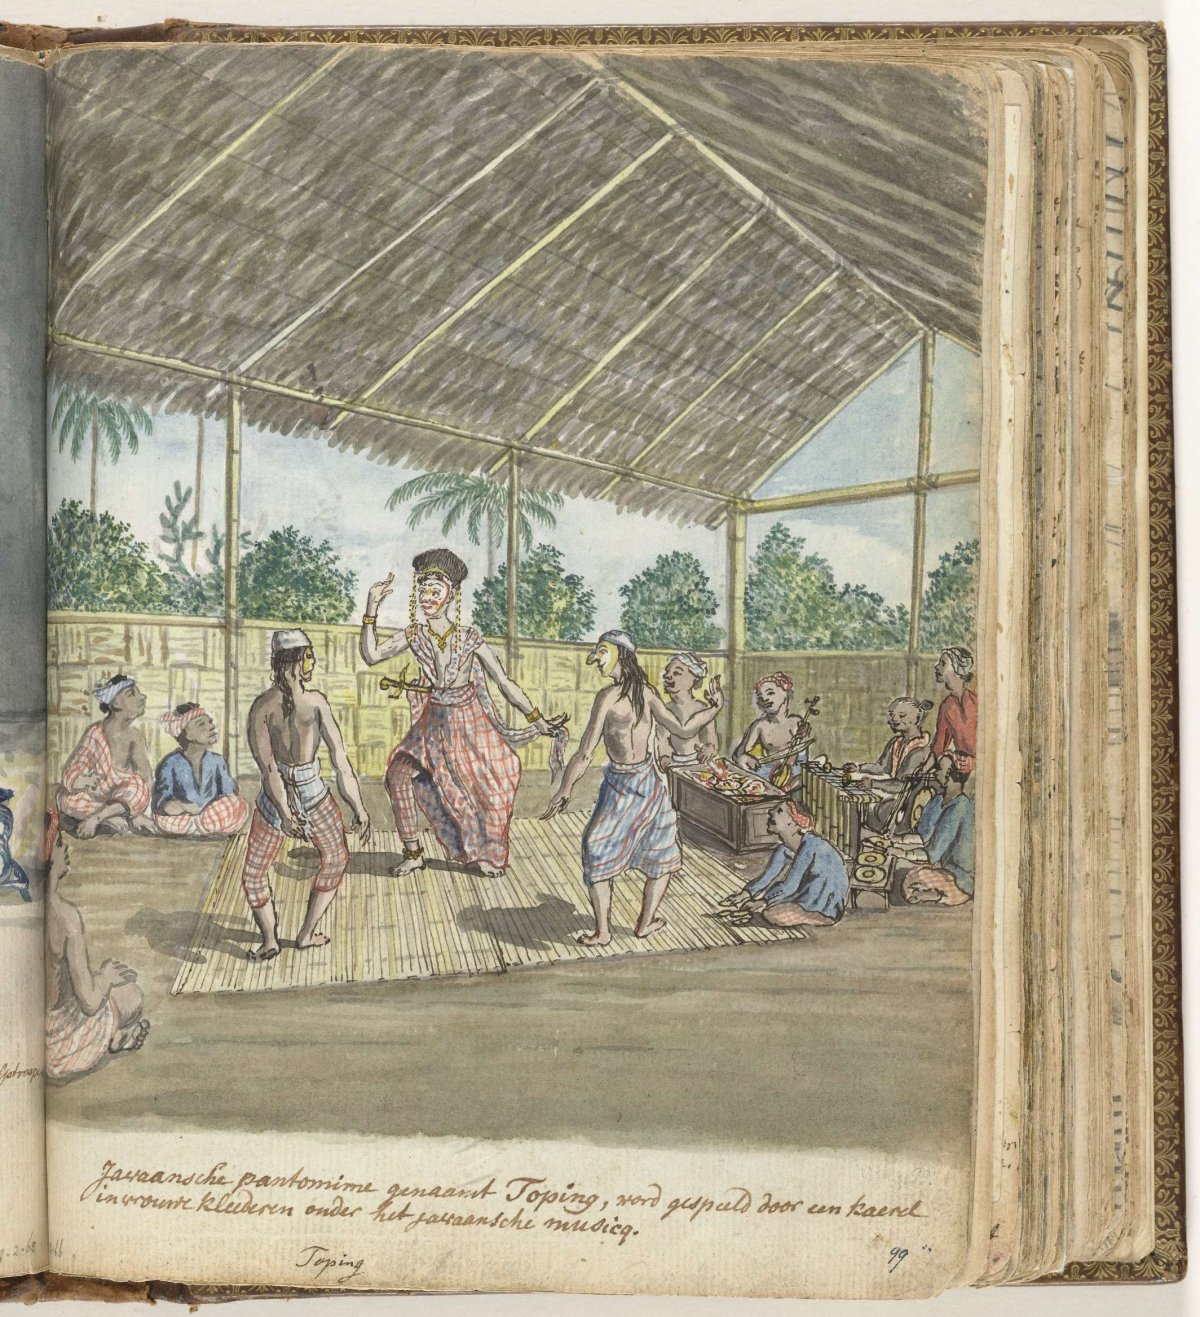 Javaanse pantomime genaamd 'toping', Jan Brandes, 1779 - 1785